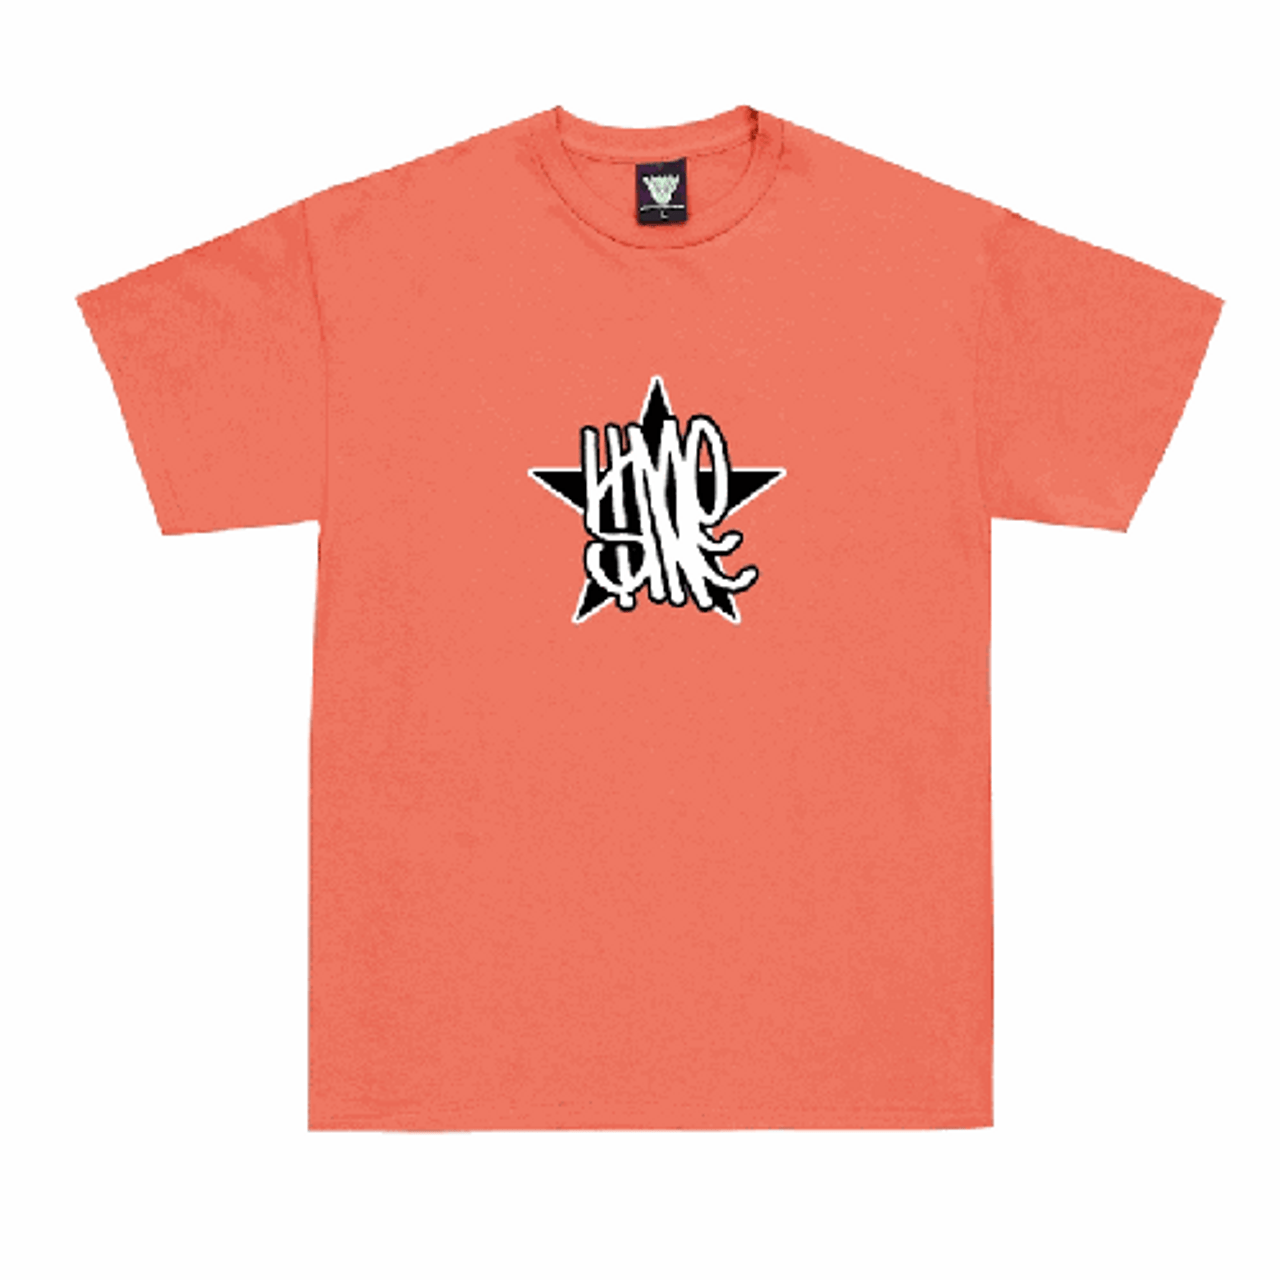 Limosine Star Orange Coral Tshirt LG